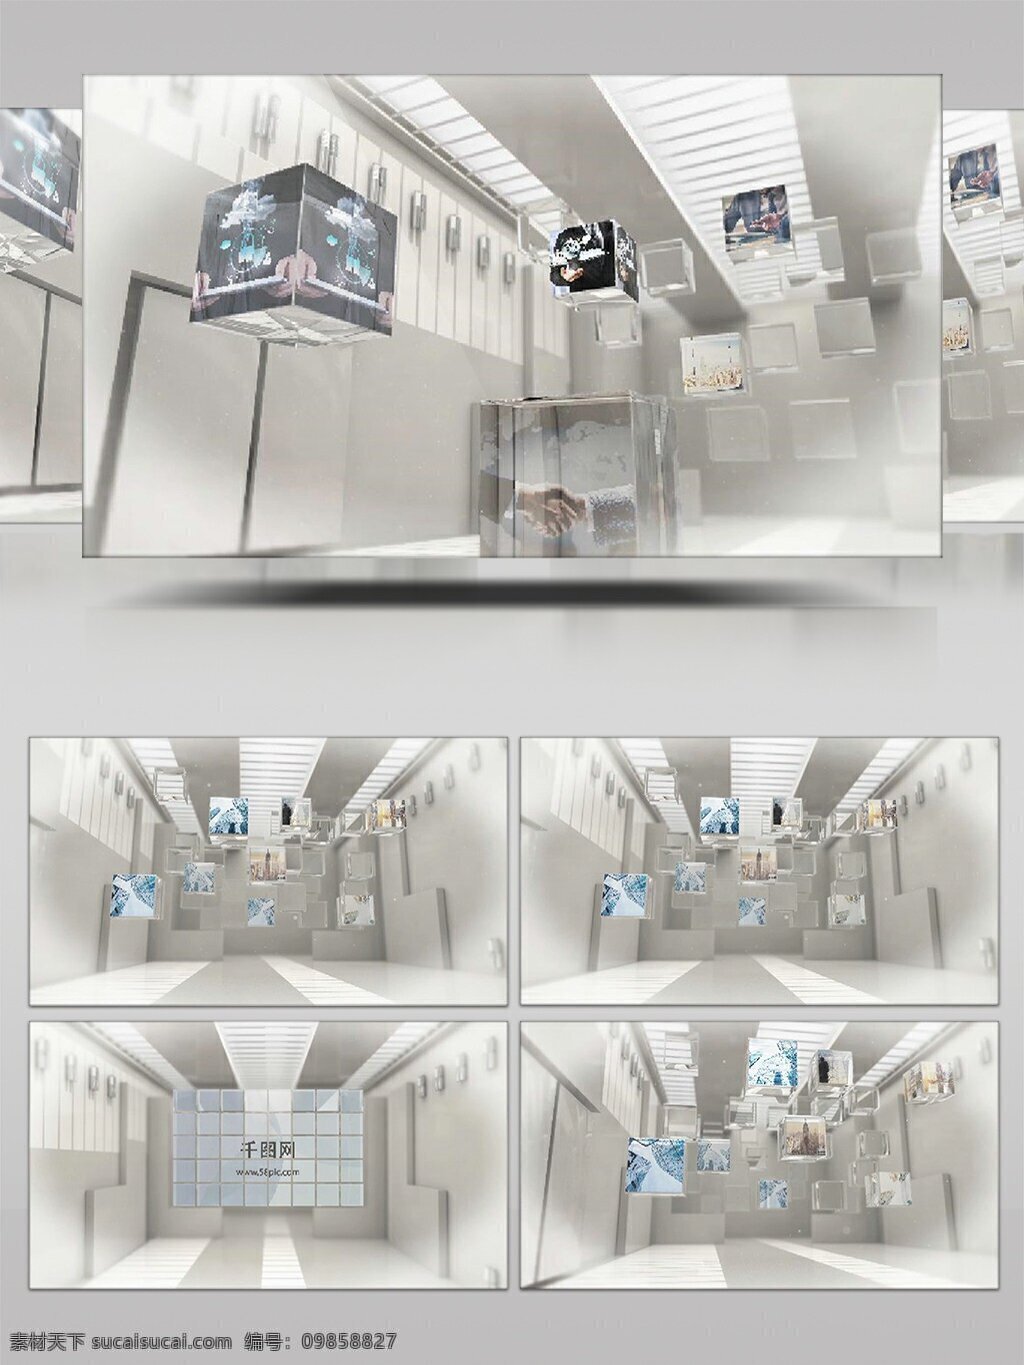 创意 白色 空间 中 玻璃 立方 盒子 组 合成 标志 ae 模板 商务企业 展示宣传 玻璃特效 视频素材 ae模板